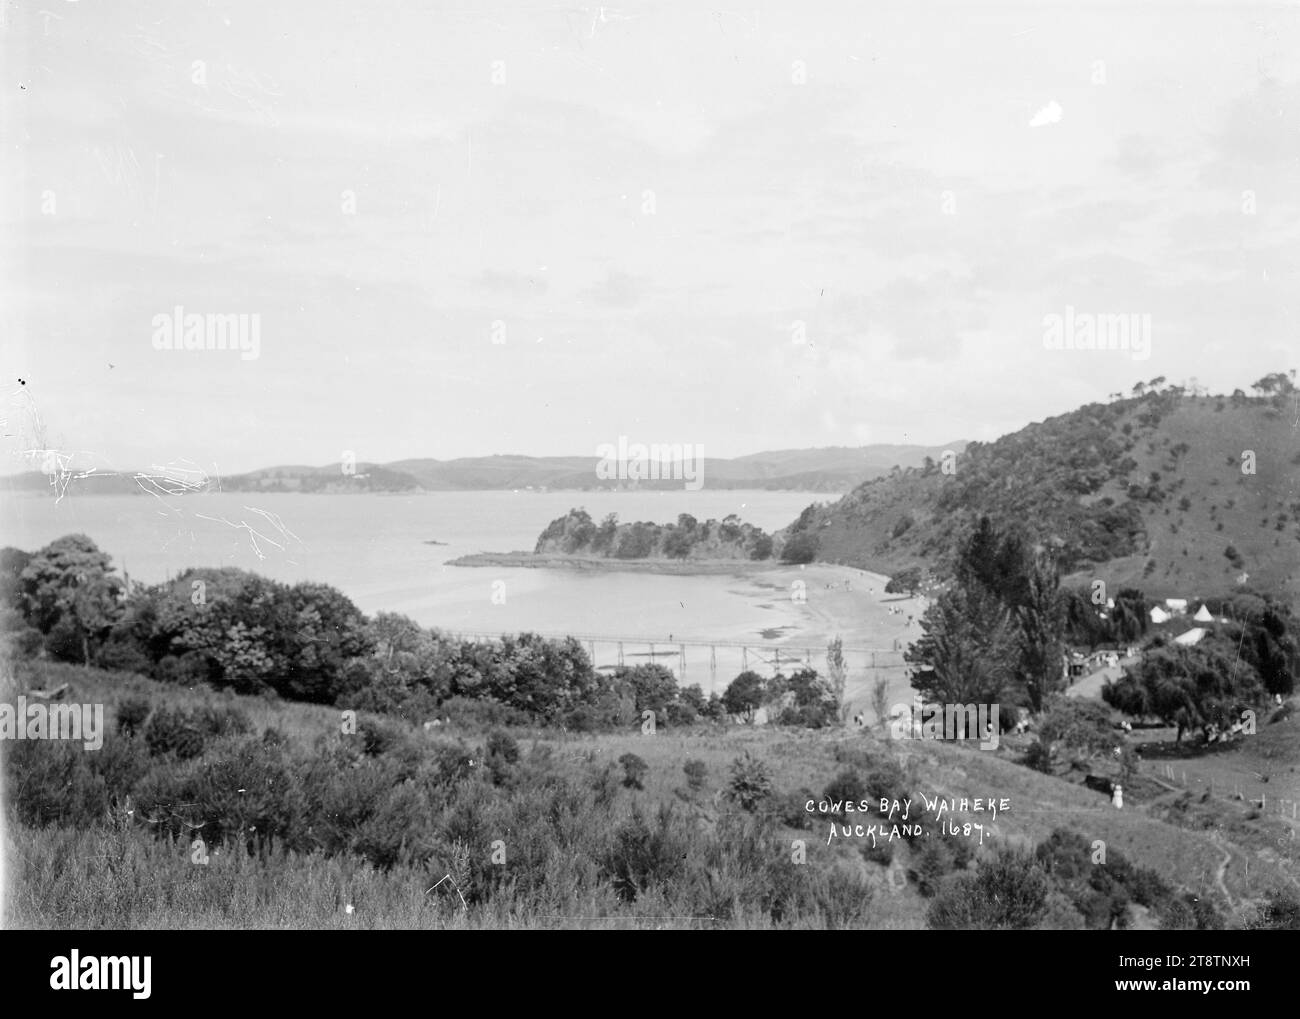 Vista generale di Cowes Bay, Waiheke Island, Vista di Cowes Bay con la bassa marea presa da un alto punto panoramico a nord della baia guardando a sud lungo la baia con Ponui Island è la distanza. Il molo può essere visto a media distanza. Le tende sono visibili tra gli alberi sulla destra. La gente è in spiaggia e sul pendio erboso in primo piano. Fotografato all'inizio degli anni '1900 Foto Stock